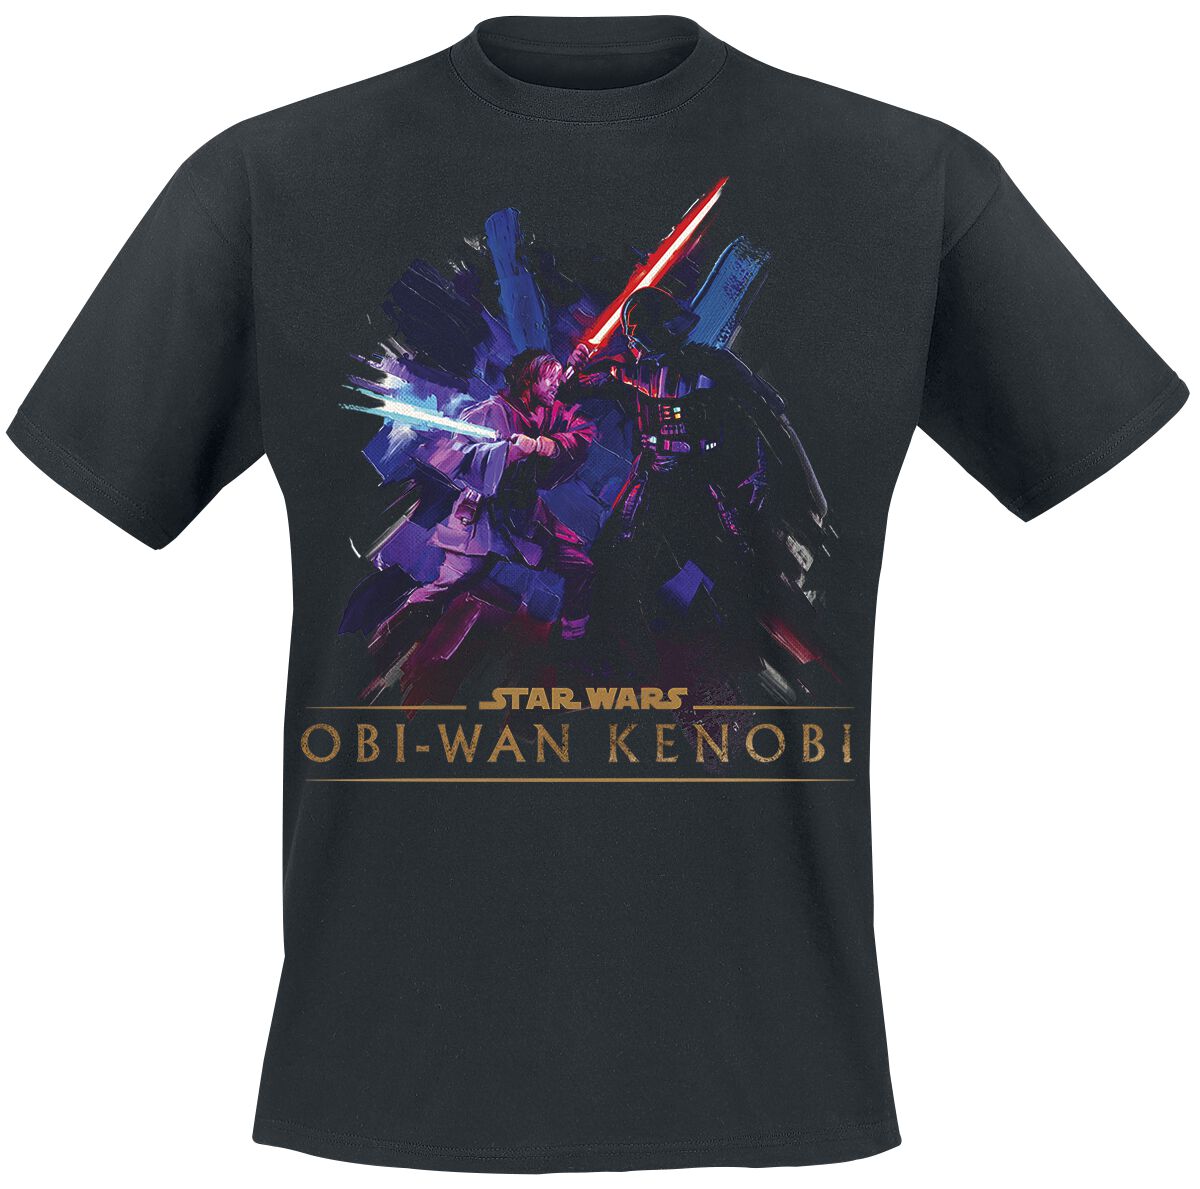 Star Wars T-Shirt - Obi-Wan Kenobi - Vintage - S bis XXL - für Männer - Größe XXL - schwarz  - EMP exklusives Merchandise!